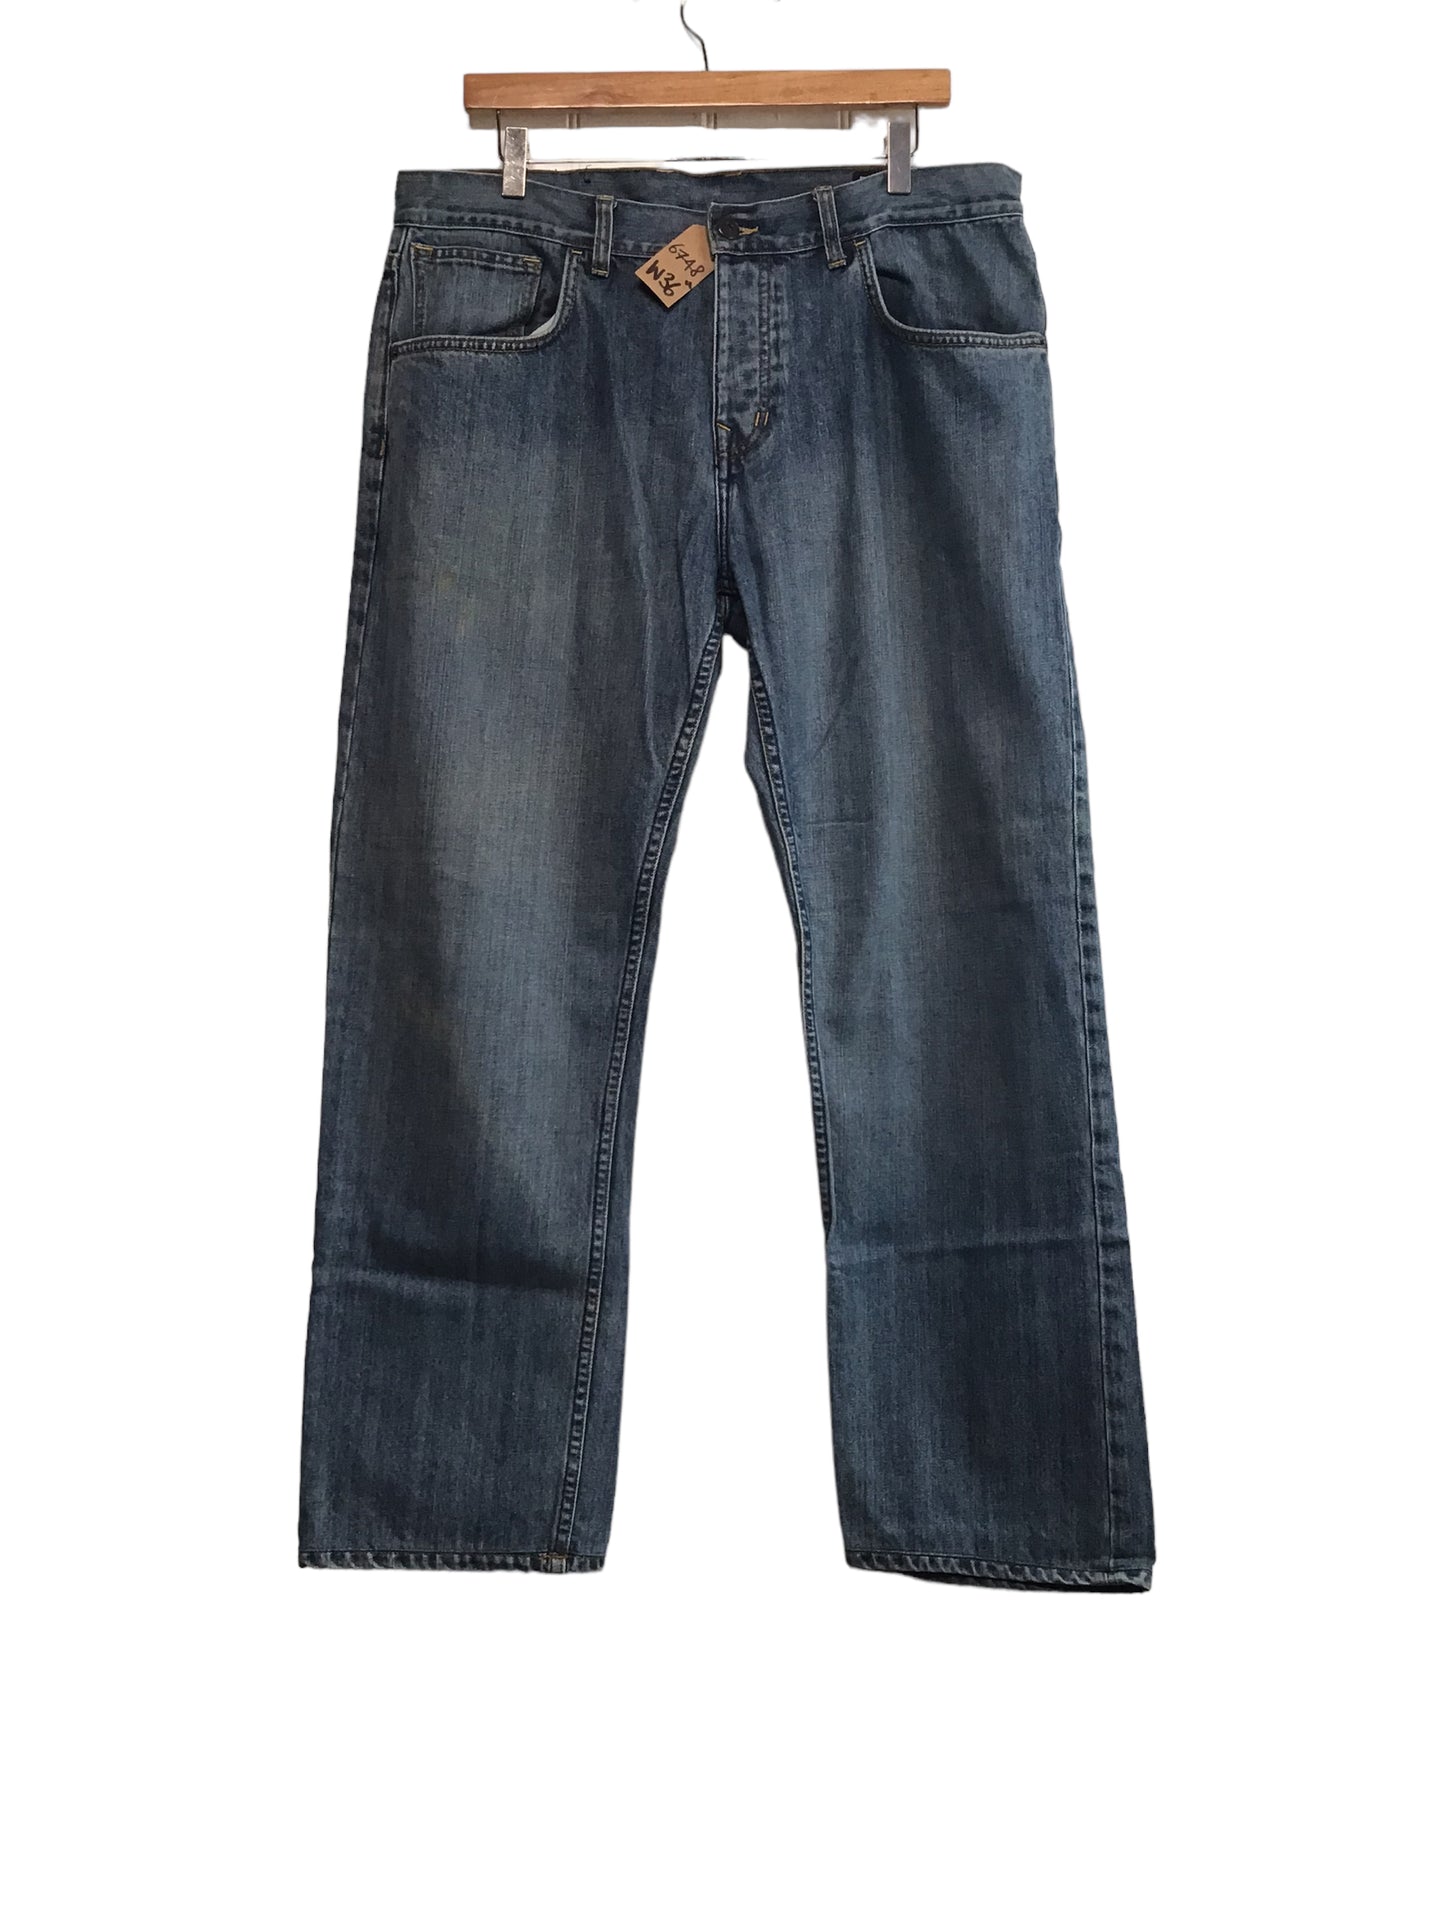 The Original Ben Sherman Jeans (36x29)